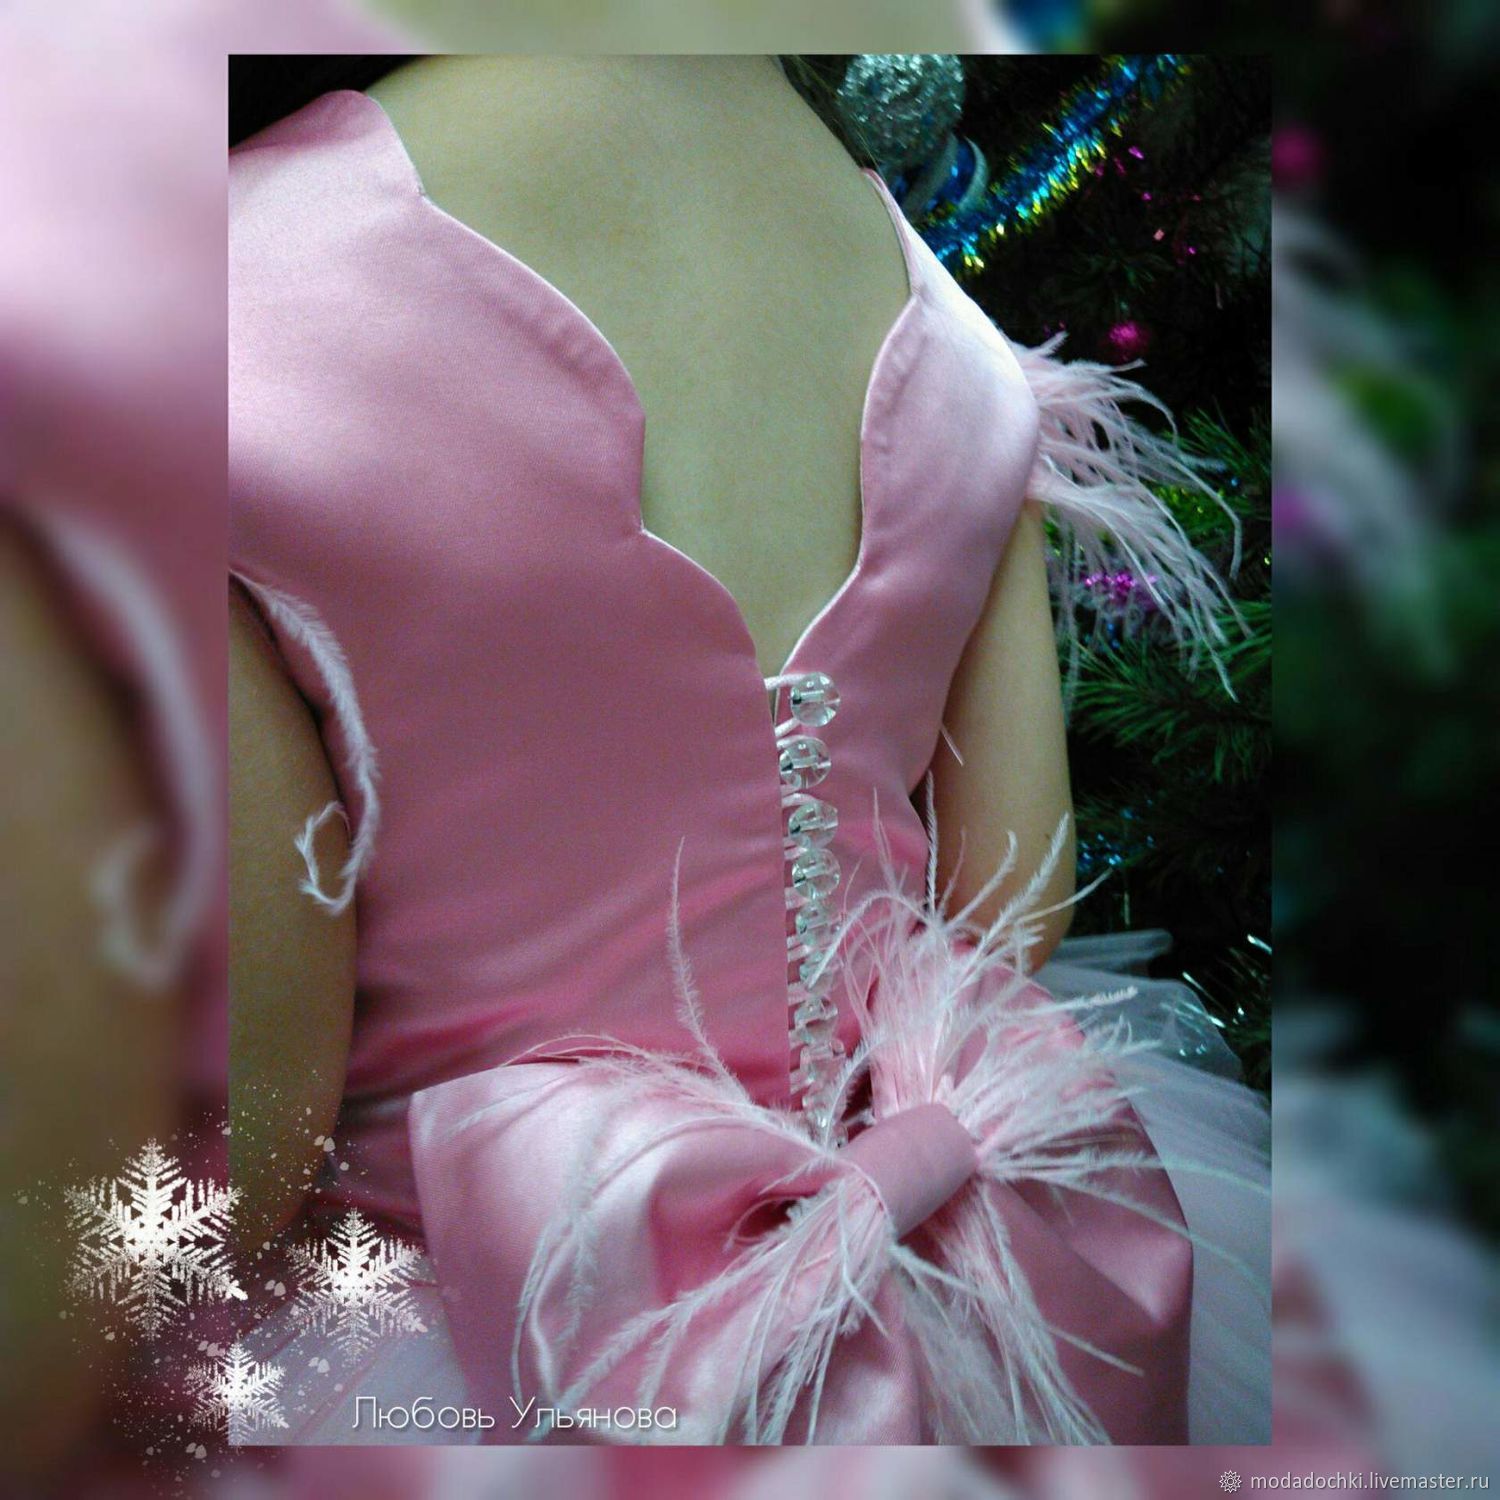 Платье "Розовый фламинго"